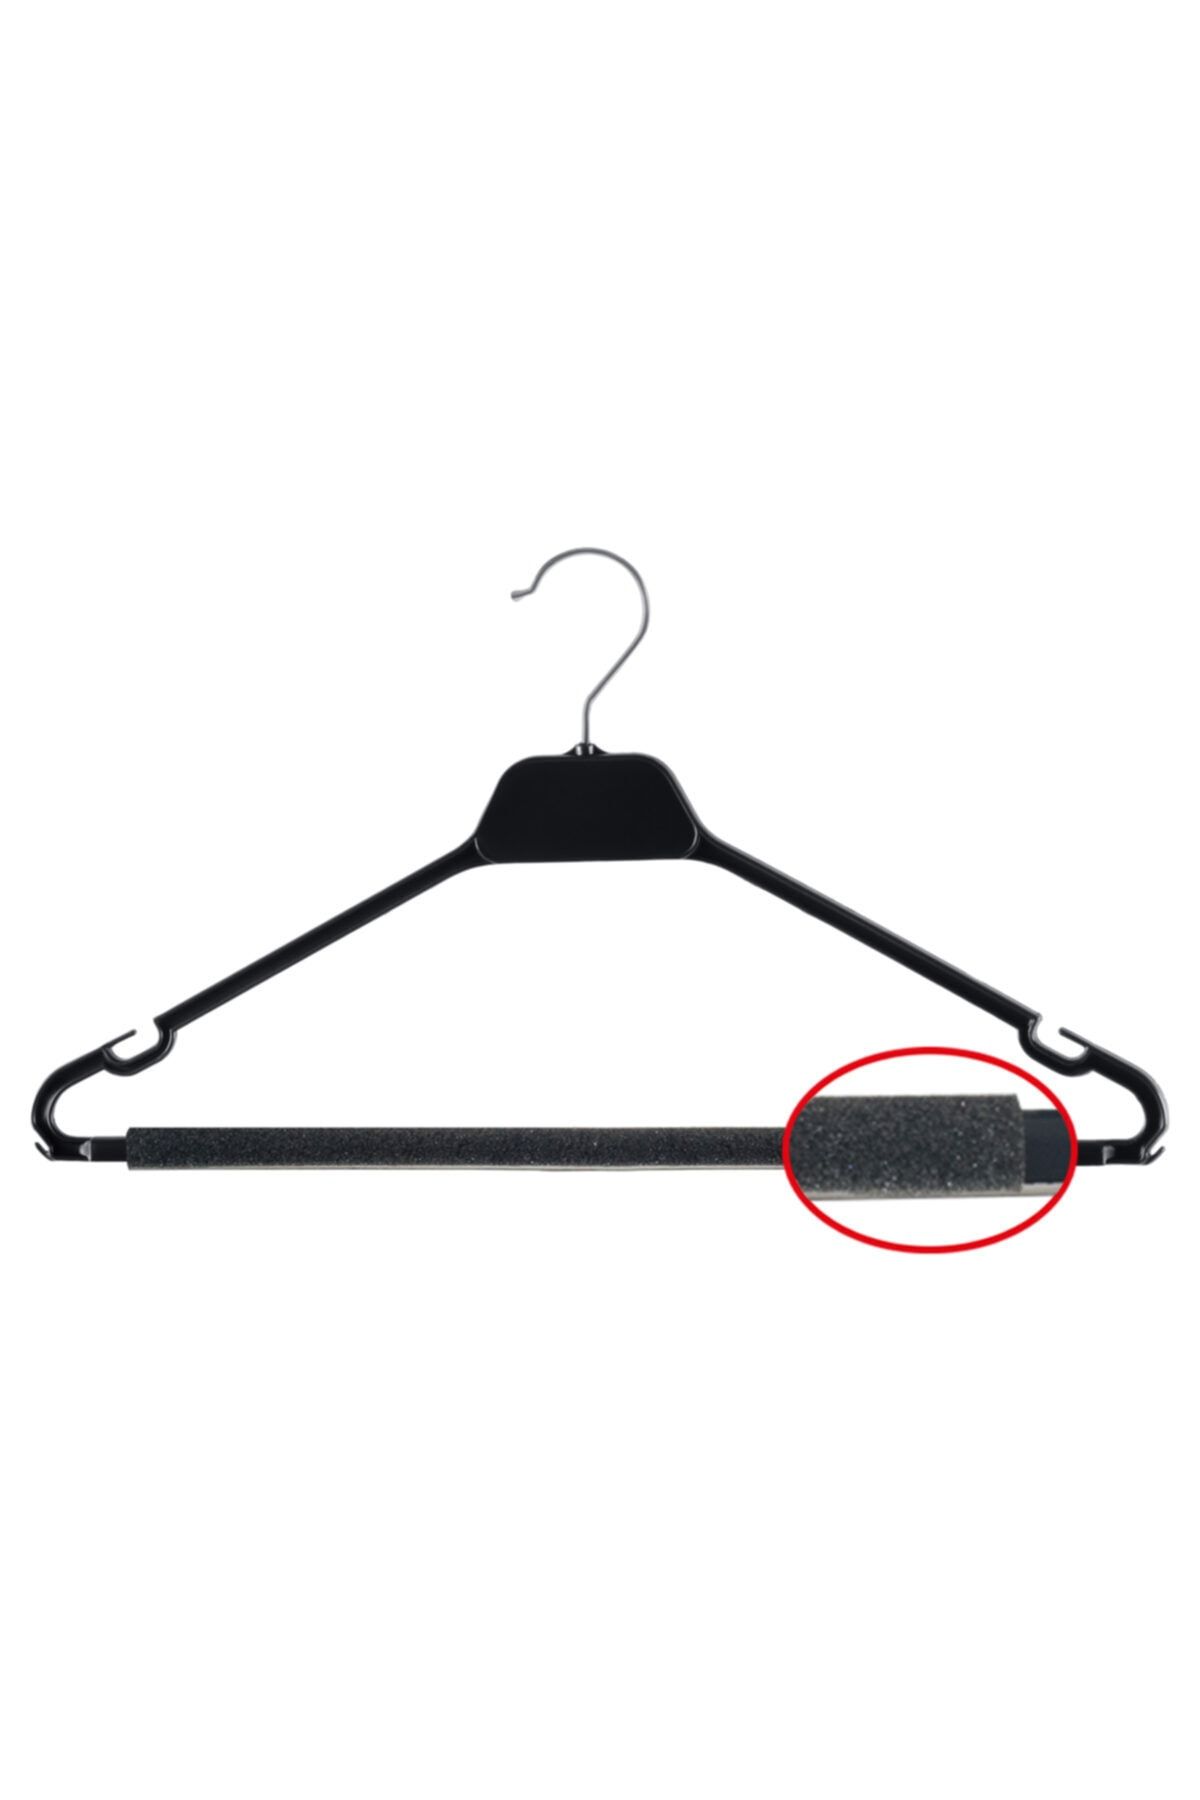 URHAN PLASTİK Up Hangers Süngerli Kuru Temizleme Askısı 1 Koli (240 ADET)